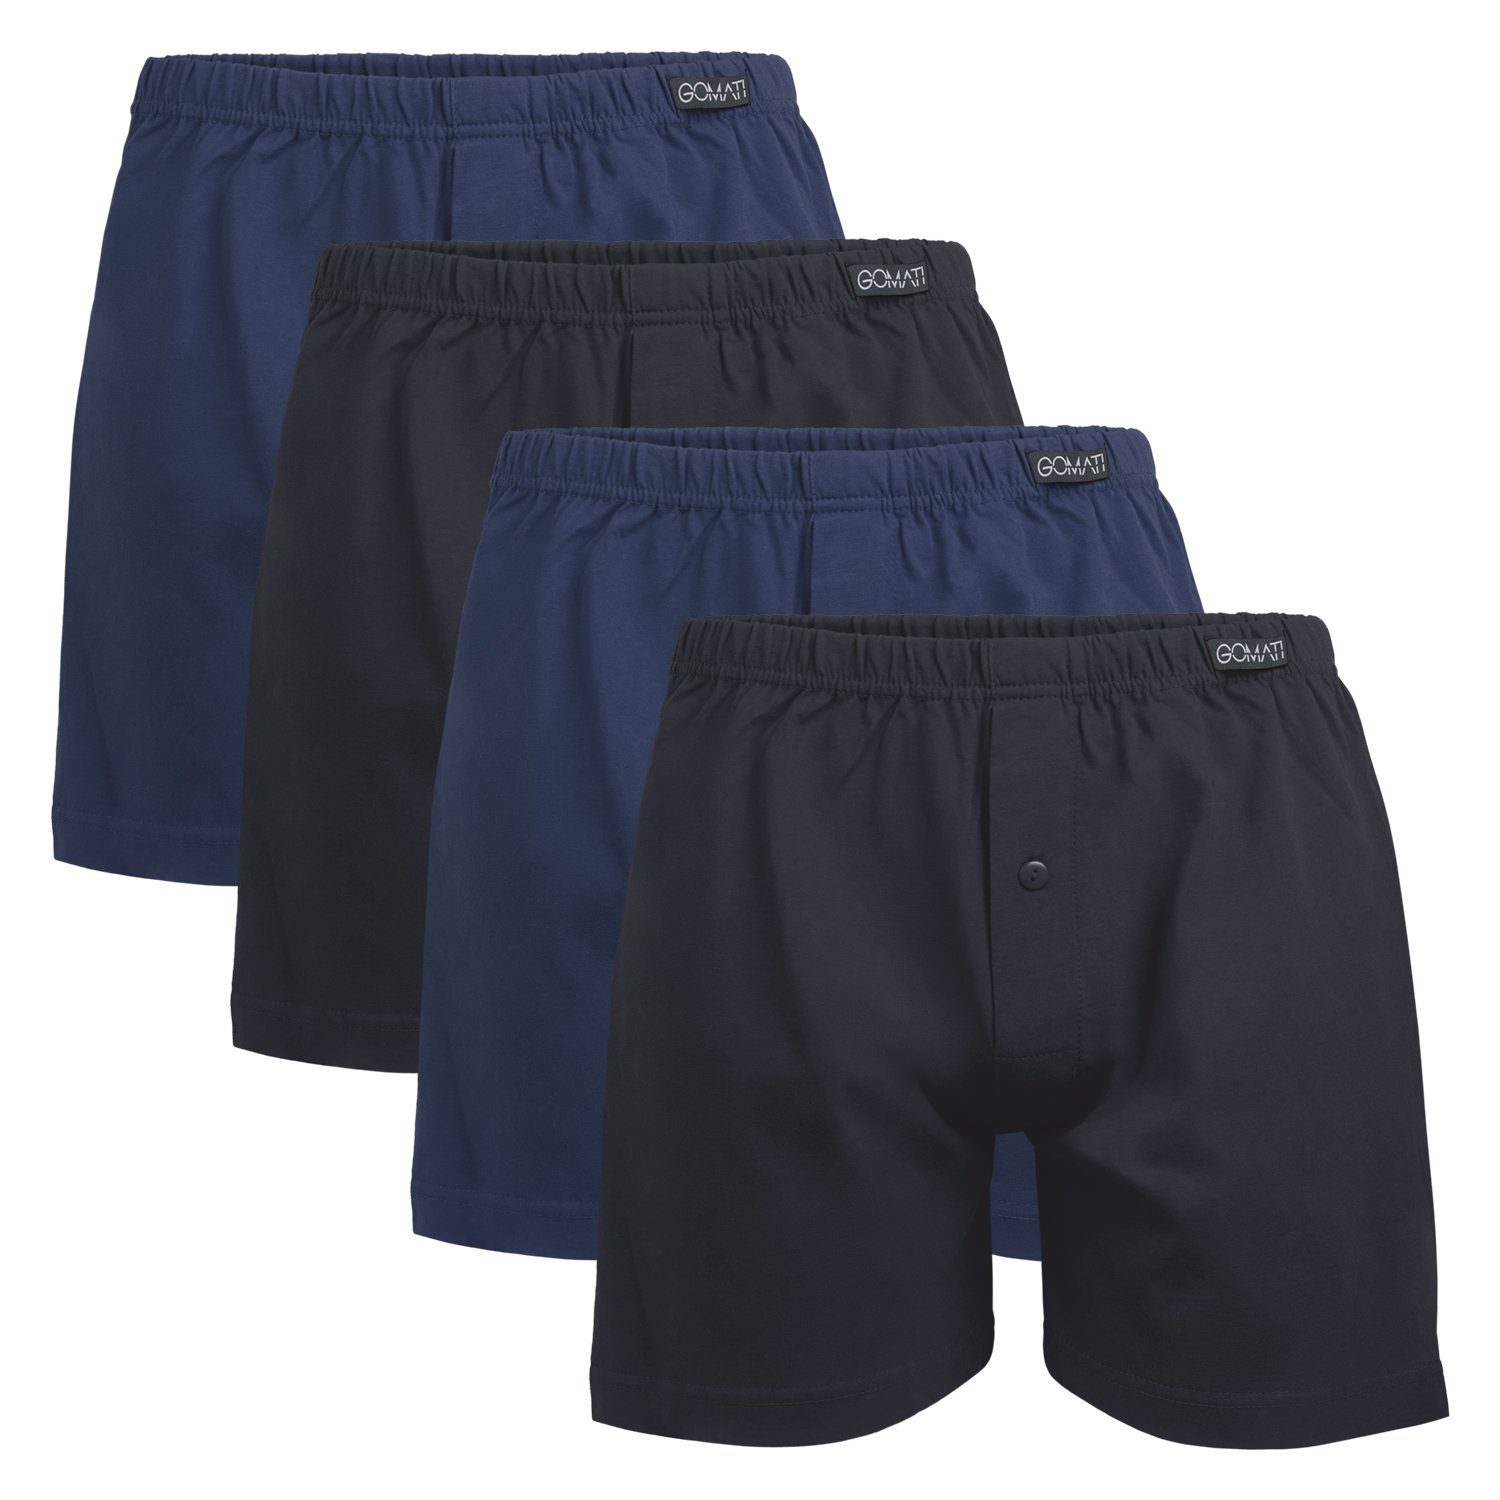 Gomati Boxershorts Herren Jersey Boxershorts Stretch Shorts aus Baumwolle (4er Pack) Mix (2x Schwarz + 2x Deep Navy)